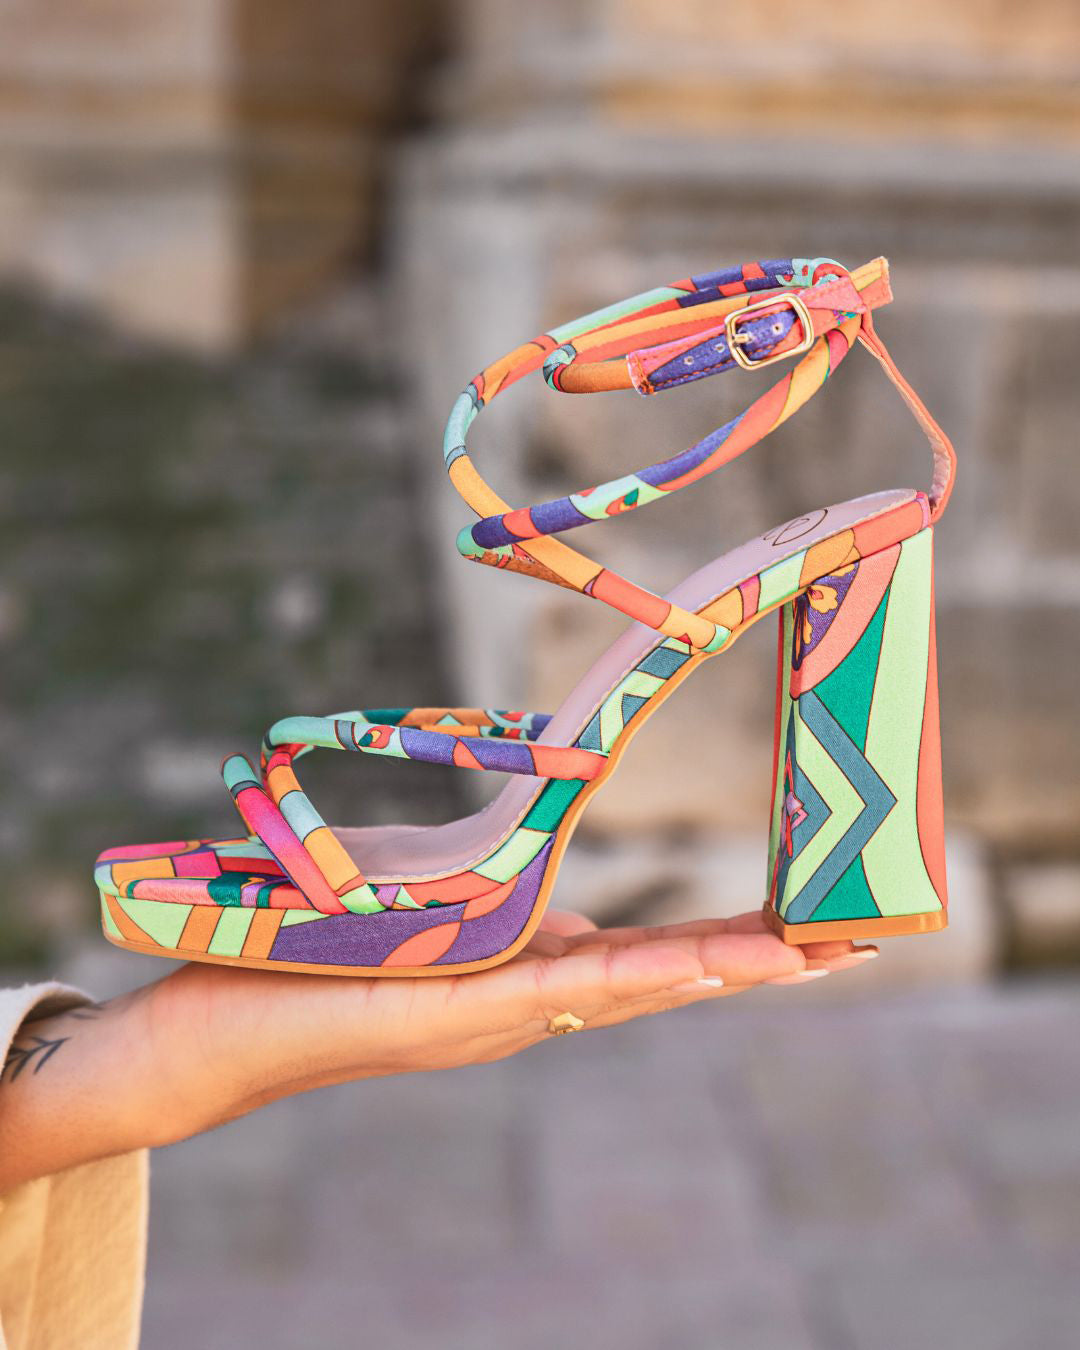 Sandale femme talon carré multicolore à motif - Léna - Casualmode.fr